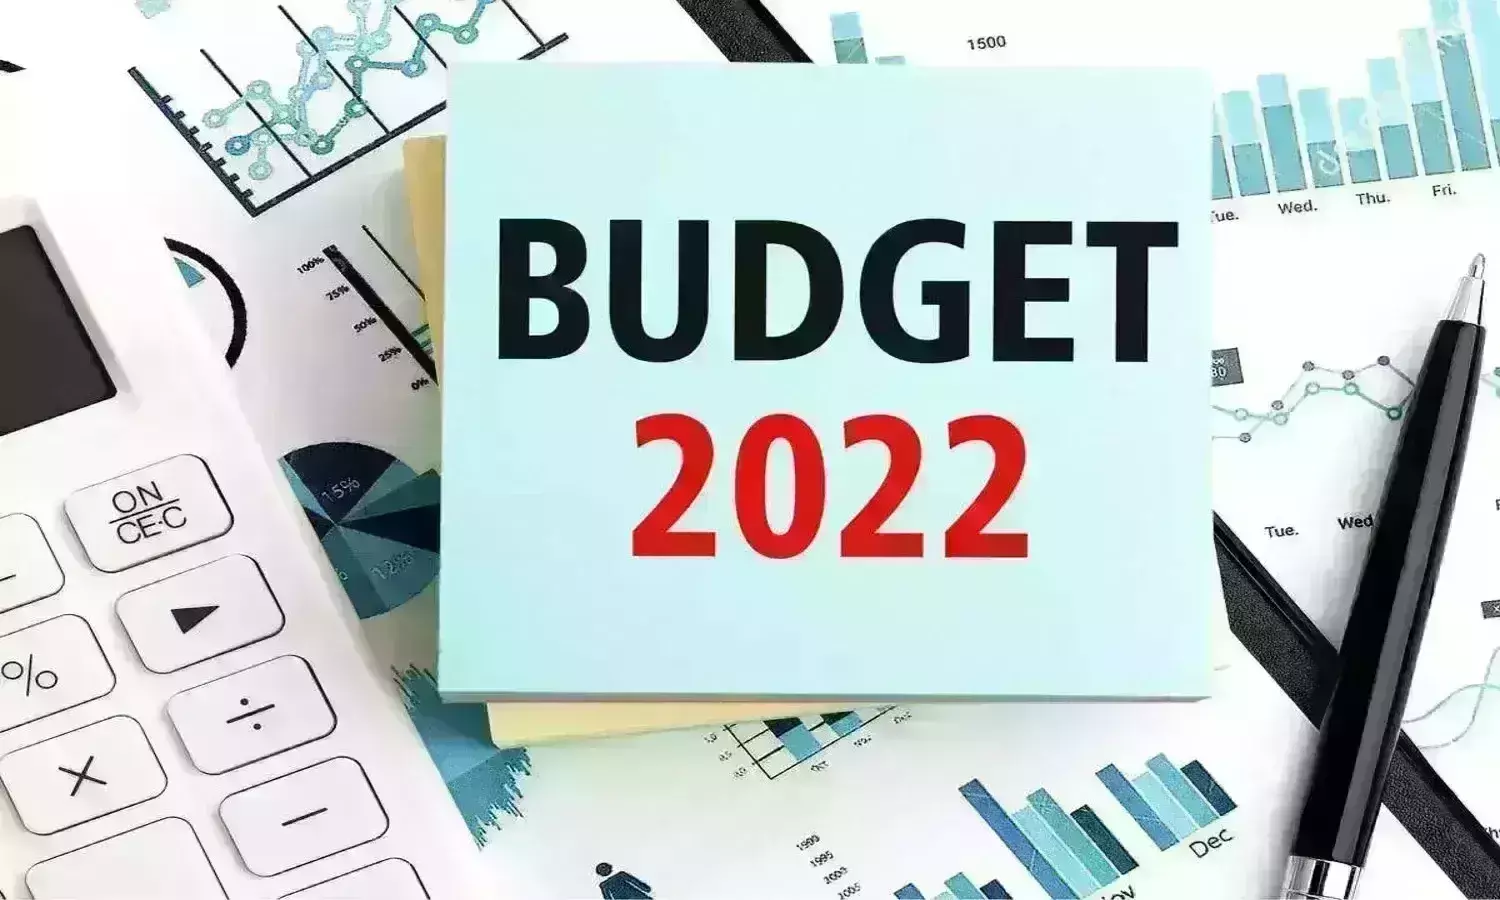 BUDGET 2022: मध्यम और छोटी फर्मों को मिलेगी मदद, हॉस्पिटैलिटी सेक्टर के लिए घोषणा